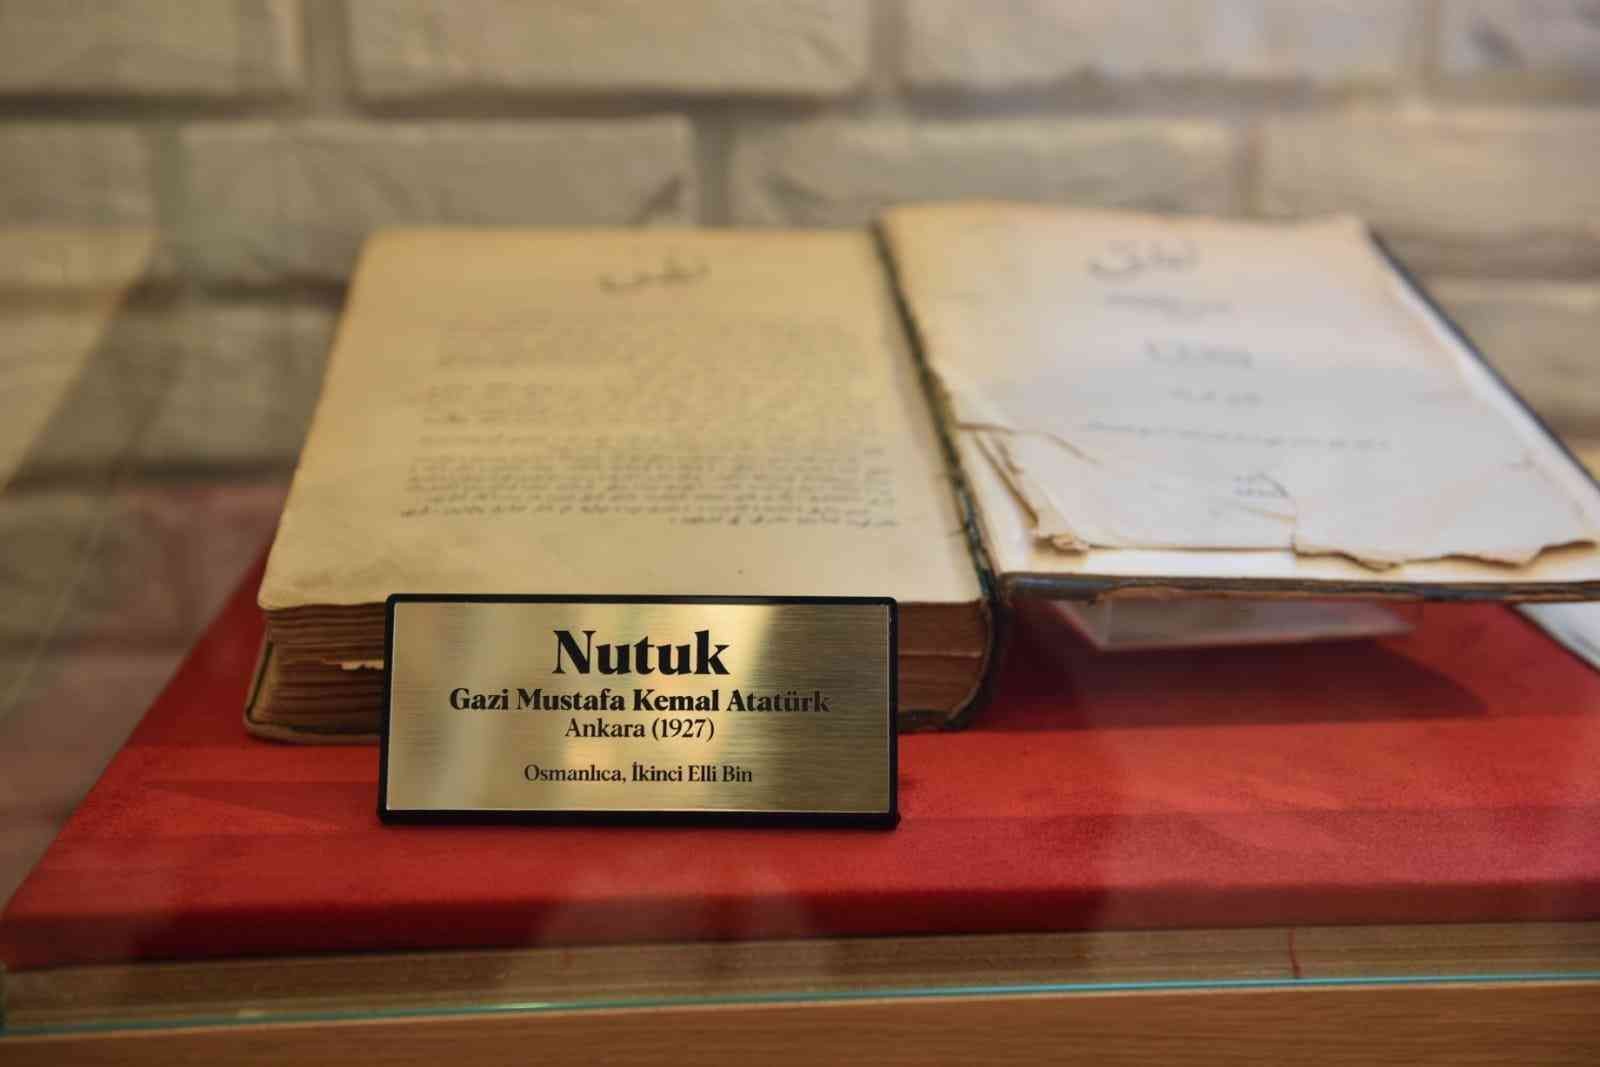 Antalya’da Atatürk’ün Osmanlıca kaleme aldığı 95 yıllık orijinal ‘Nutuk’ sergilenmeye başlandı #antalya